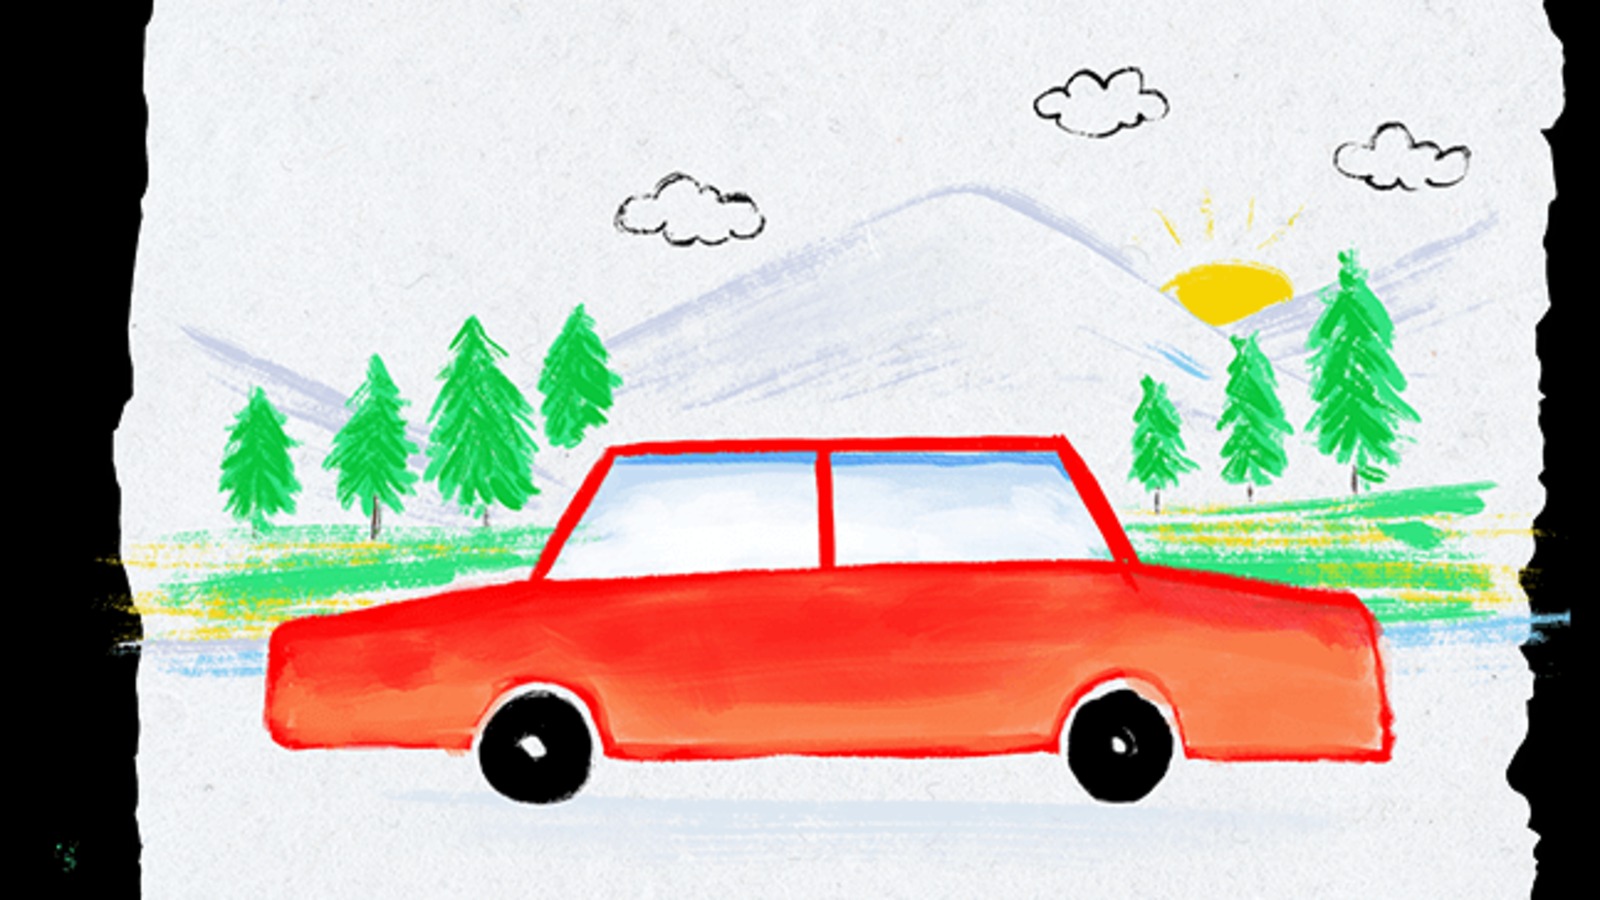 Hướng dẫn vẽ chiếc ô tô mơ ước  Ô Tô Nấm Tiêu diệt Virus Corona  Draw a  Dream car  KC art  YouTube